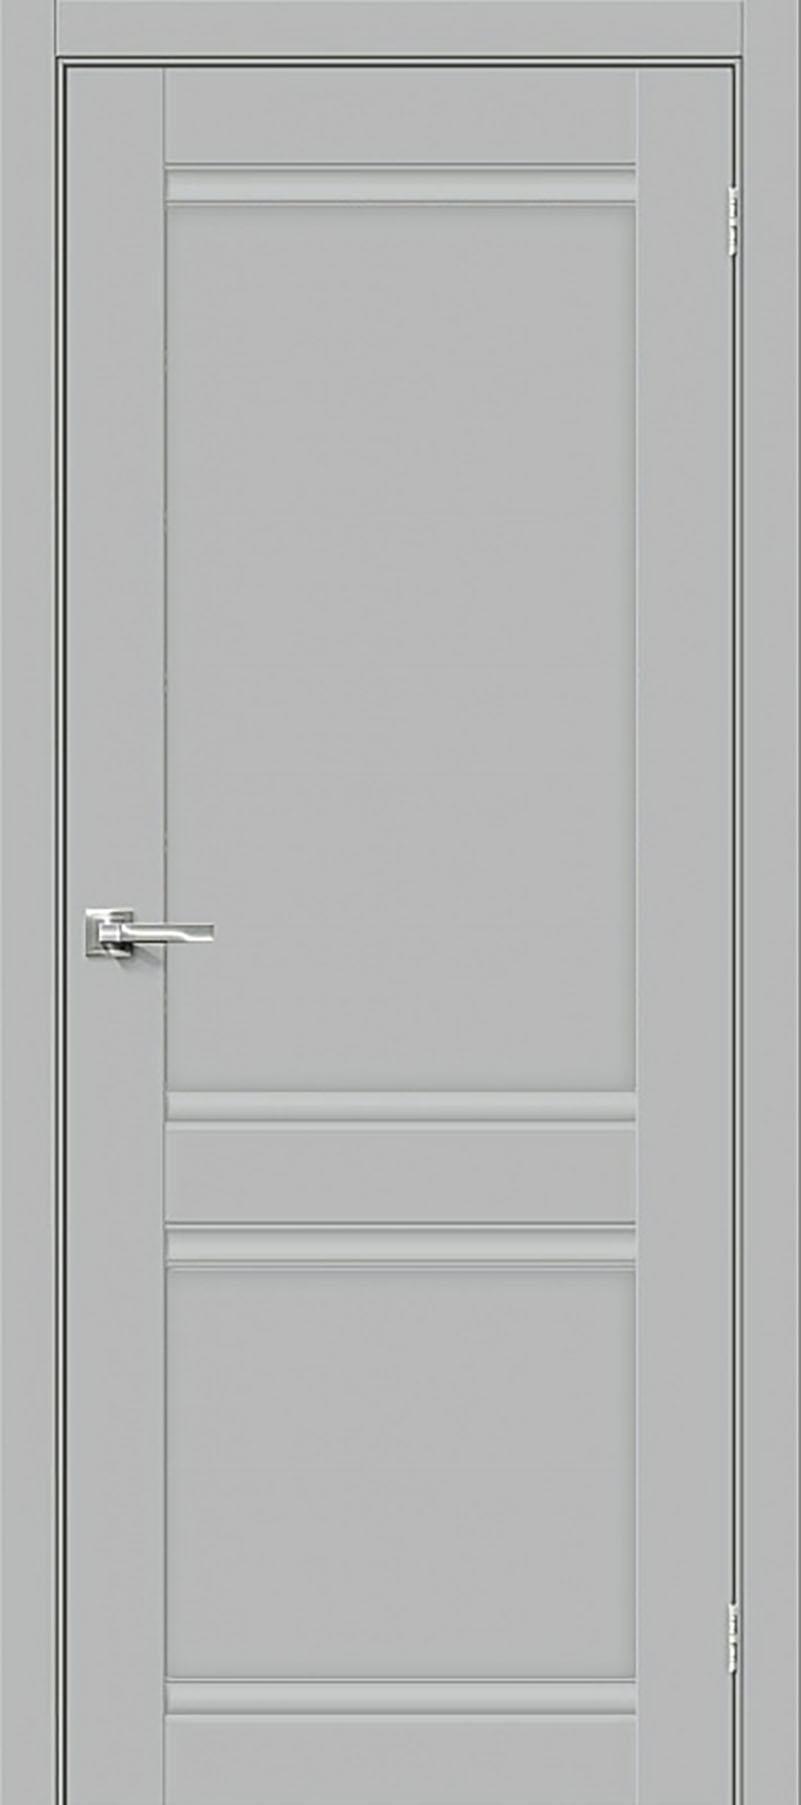 90910817 Межкомнатная дверь Парма 1211 глухая без замка и петель в комплекте 200x80см серый STLM-0420345 UBERTURE